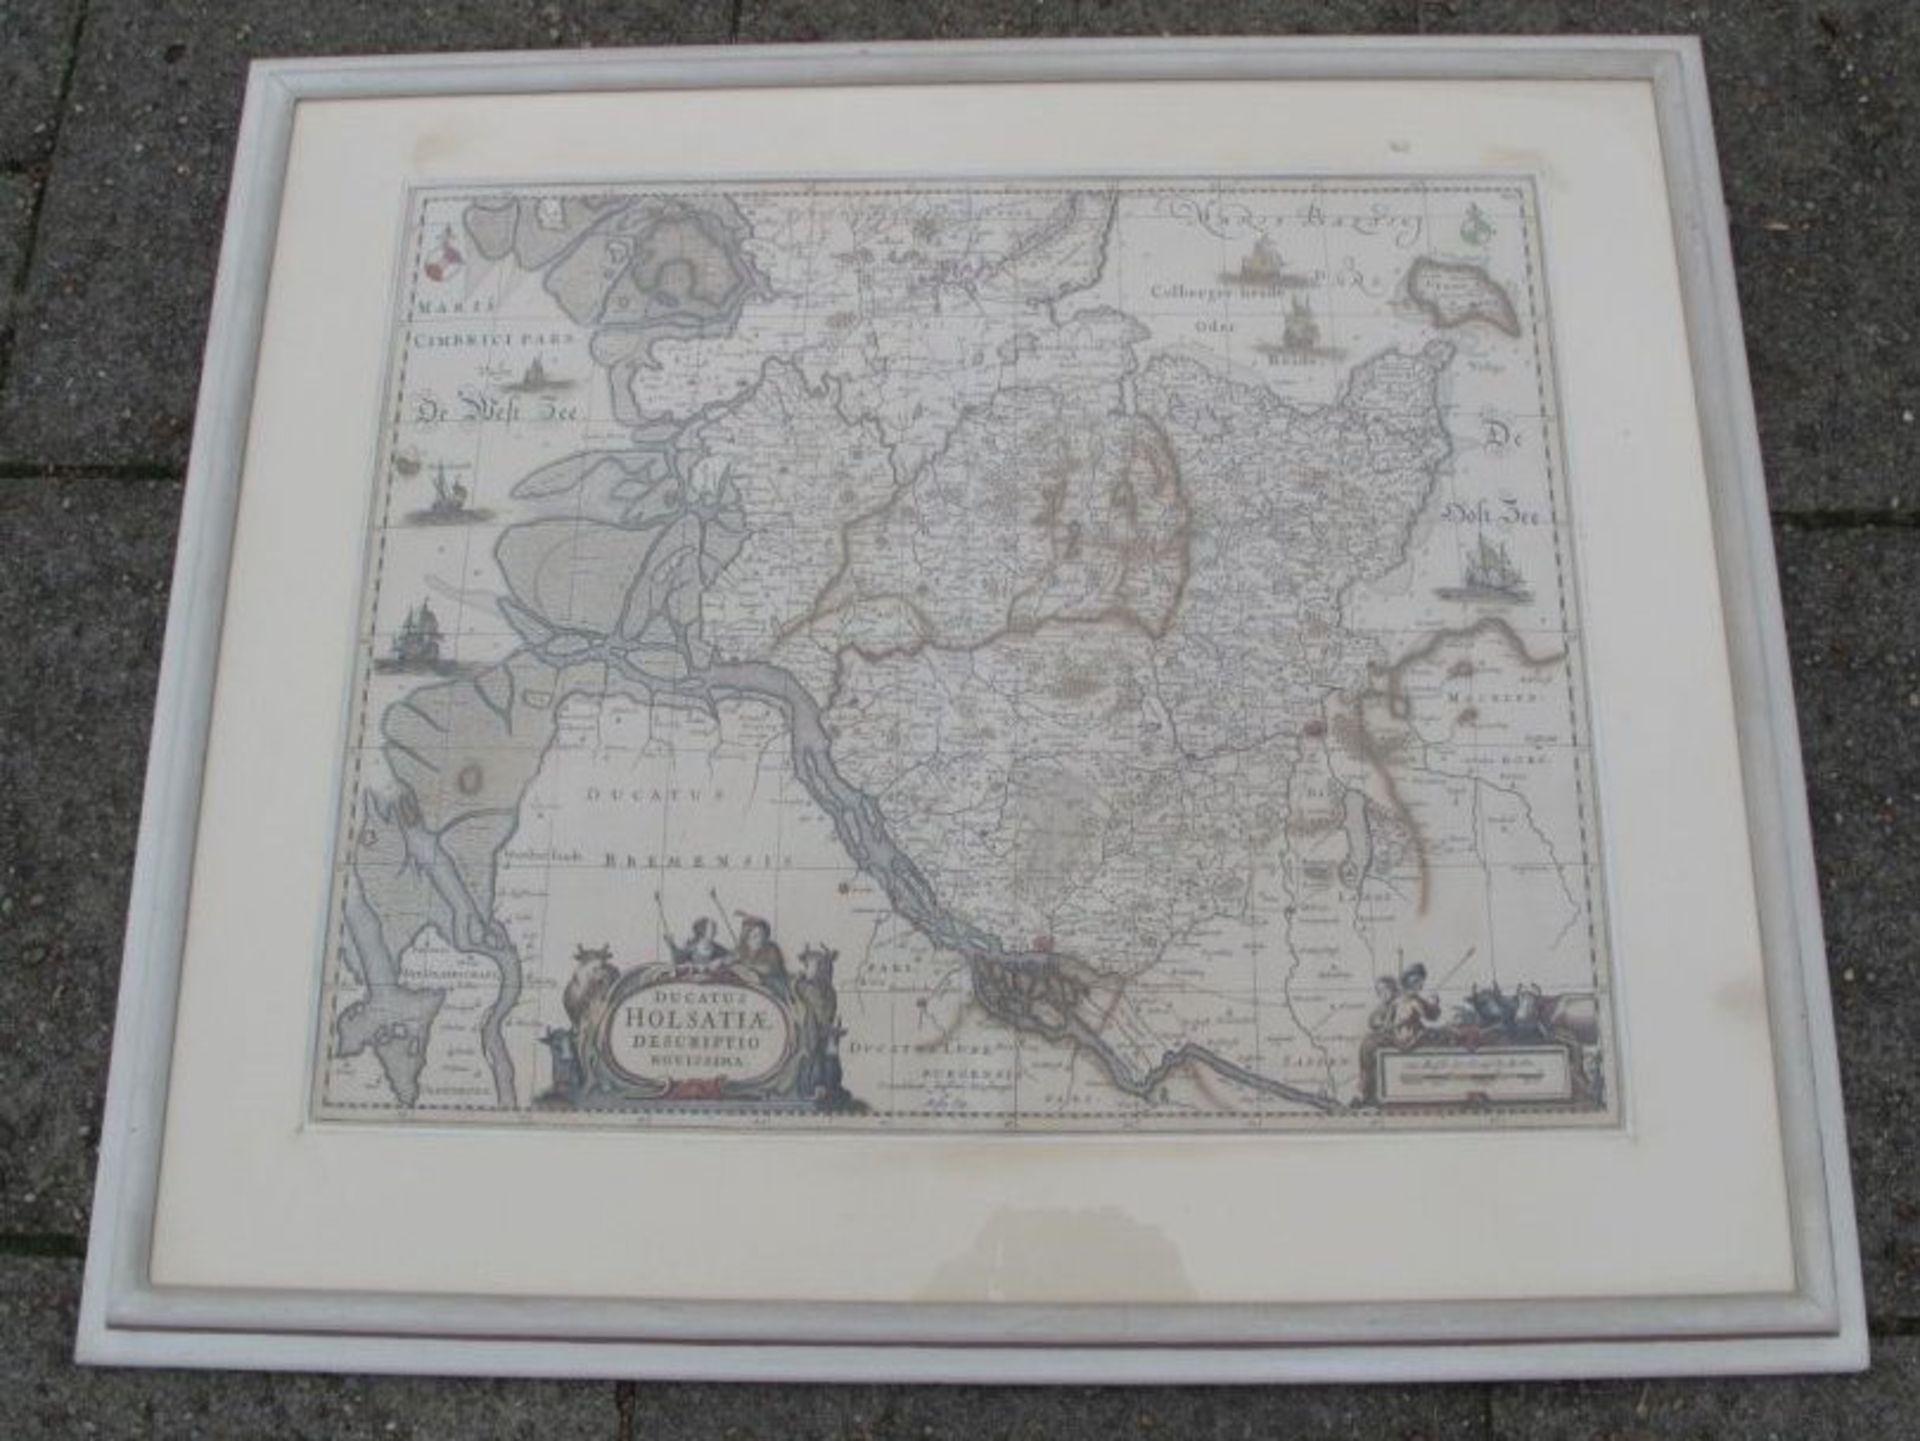 gr. Kartenstich "Holtstein", aus dem Deutschland Atlas des Moses Pitt, gerahmt/Glas, RG 62 x 73cm.